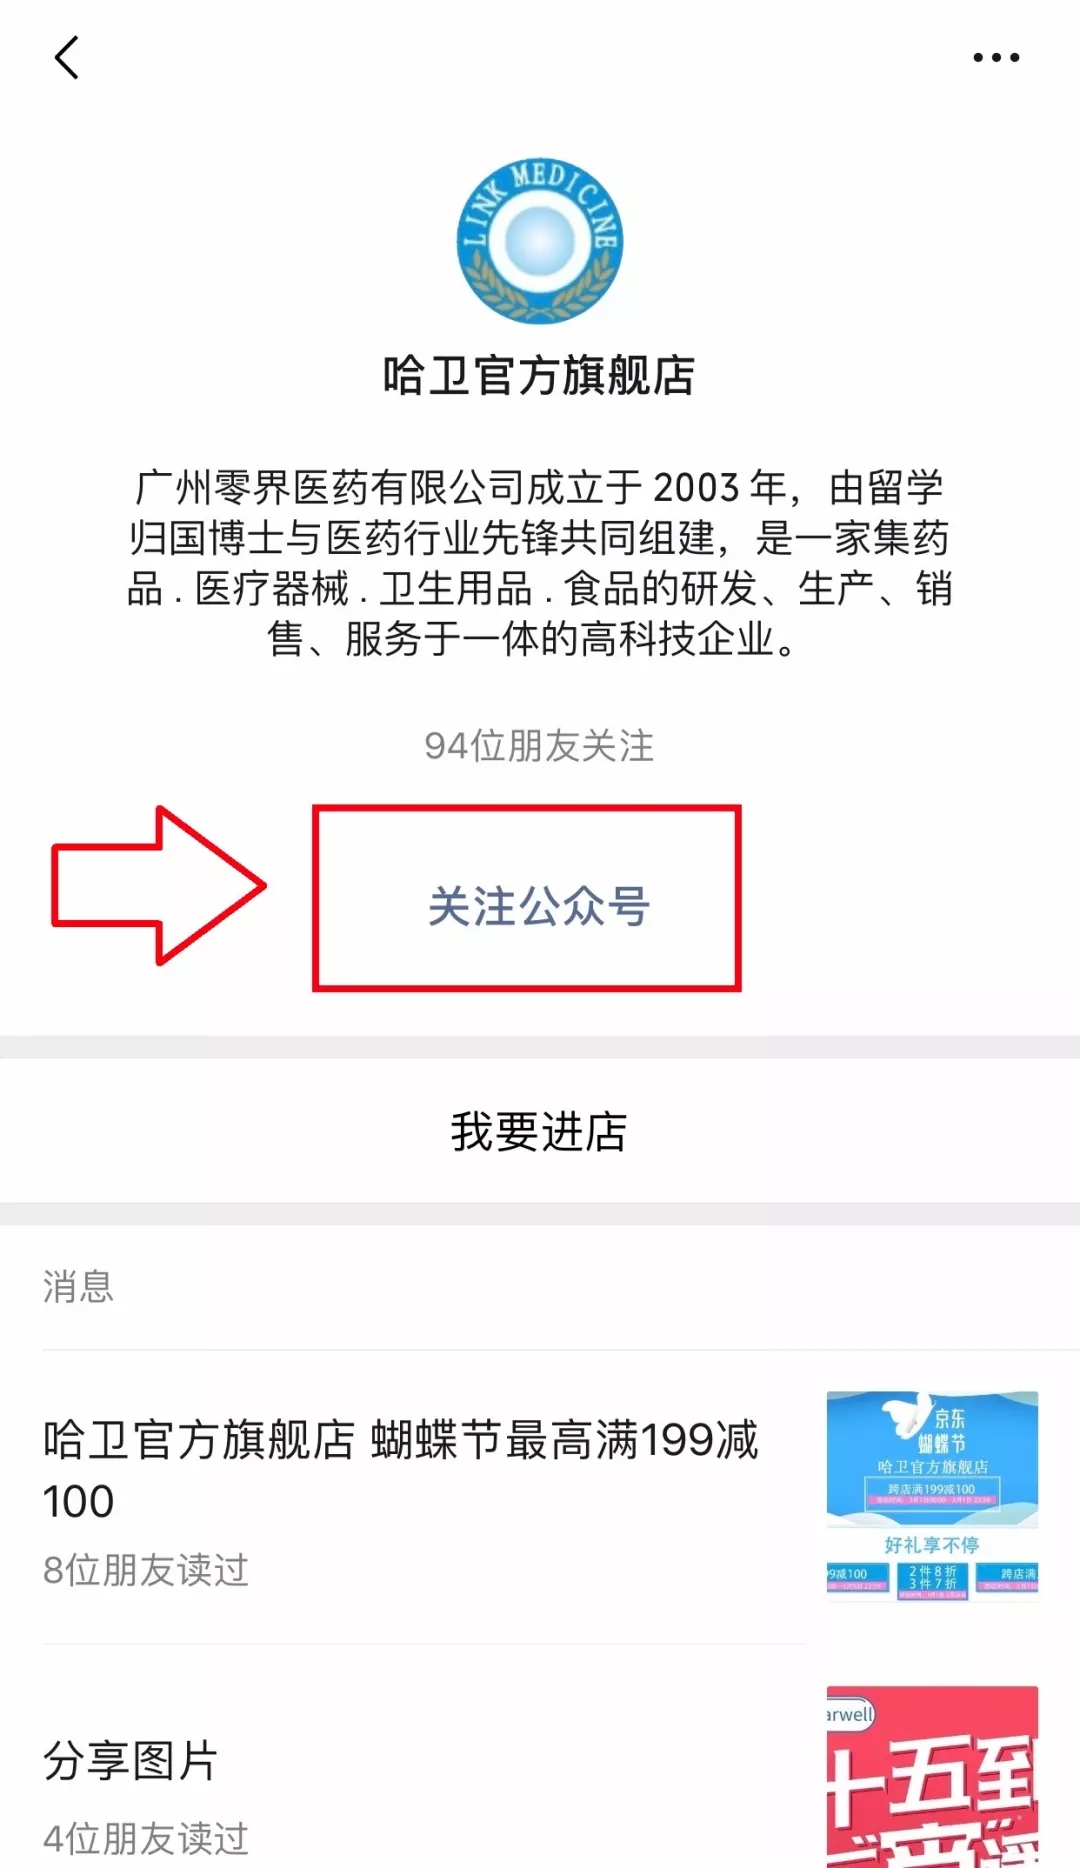 jbo竞博(中国)有限公司 | 首页_image1094